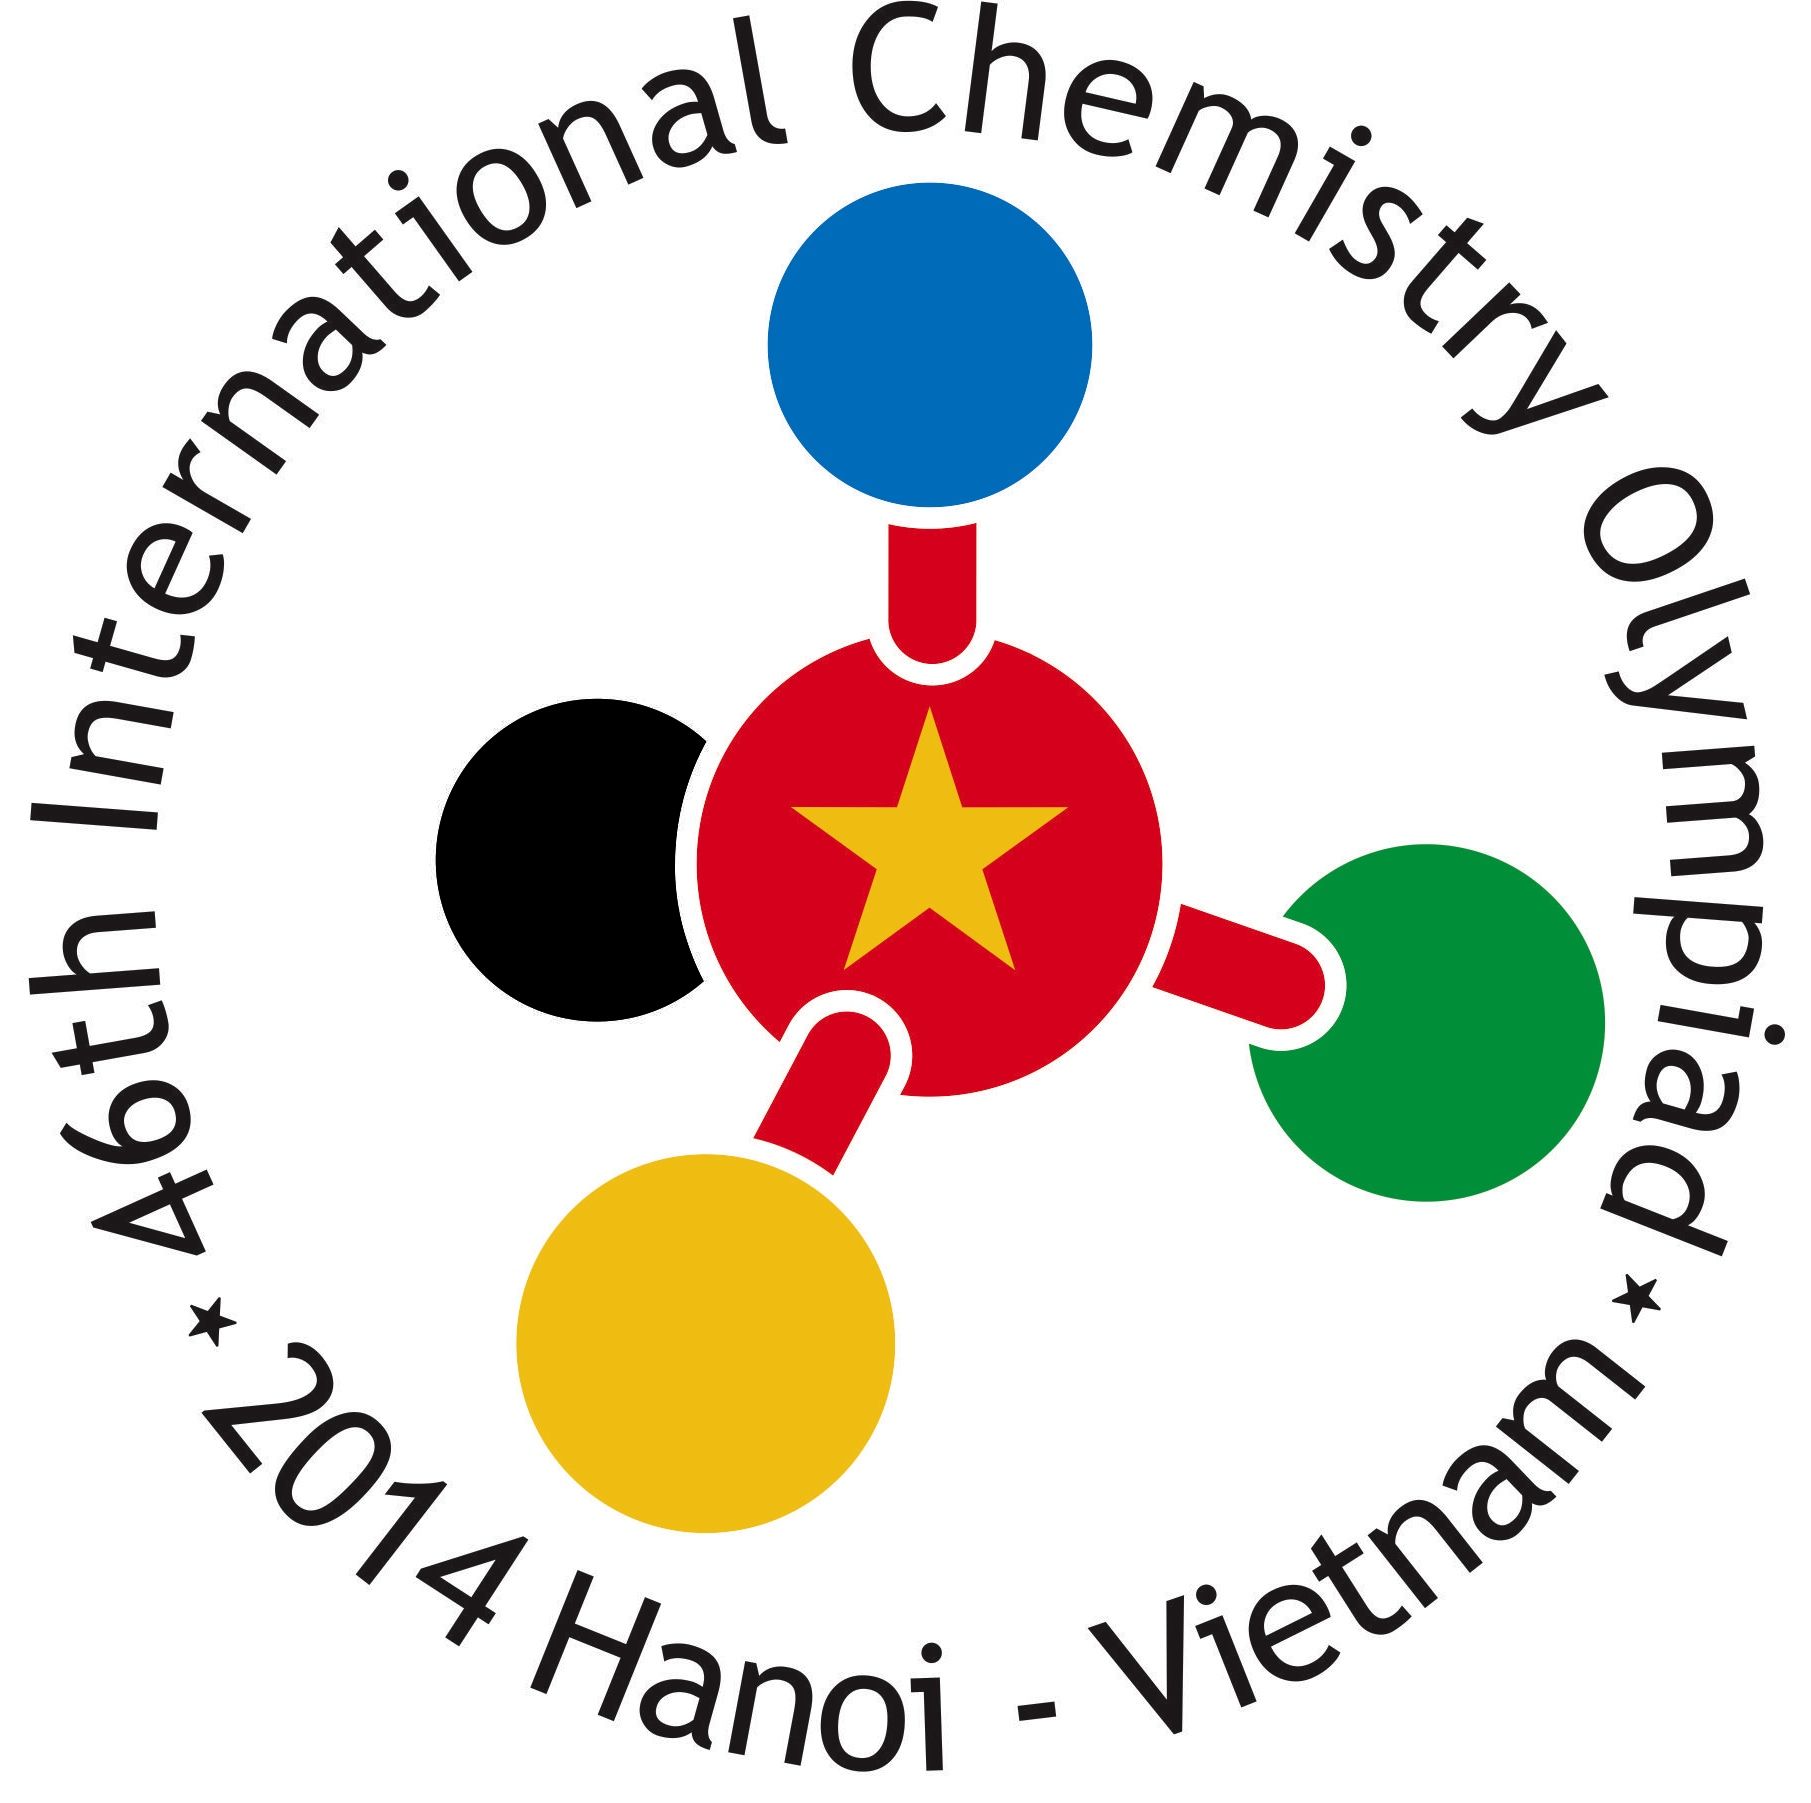 Fase Final da Seletiva Internacional de Química ocorrerá Sábado!